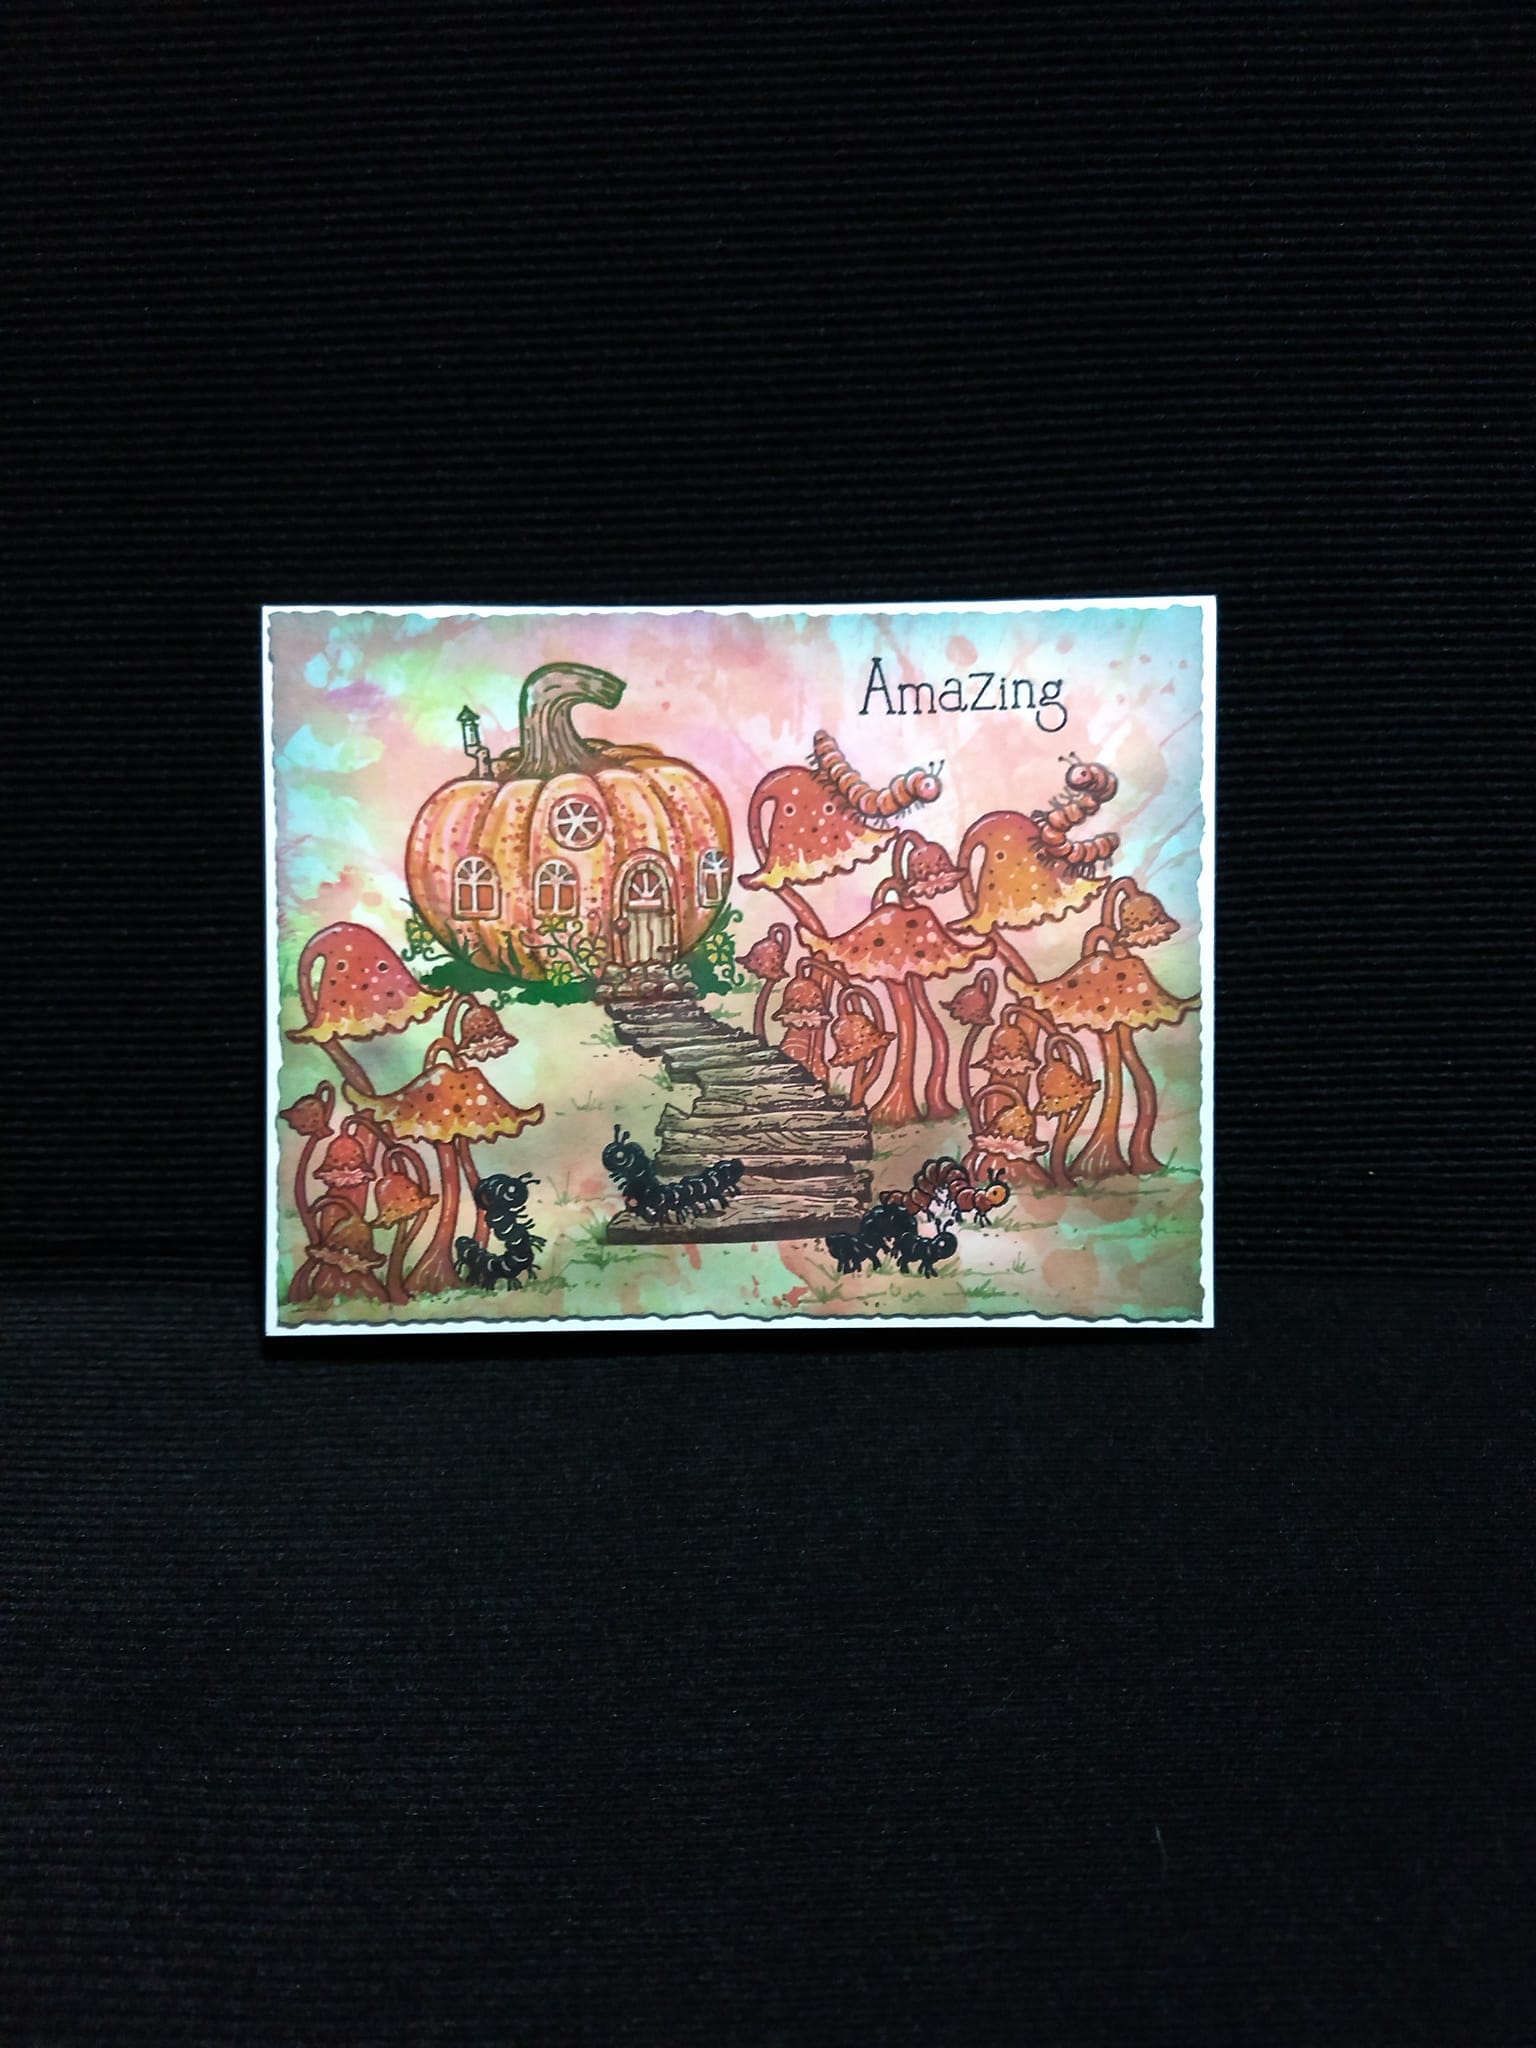 Fairy Hugs Stamps - Little Pumpkin House